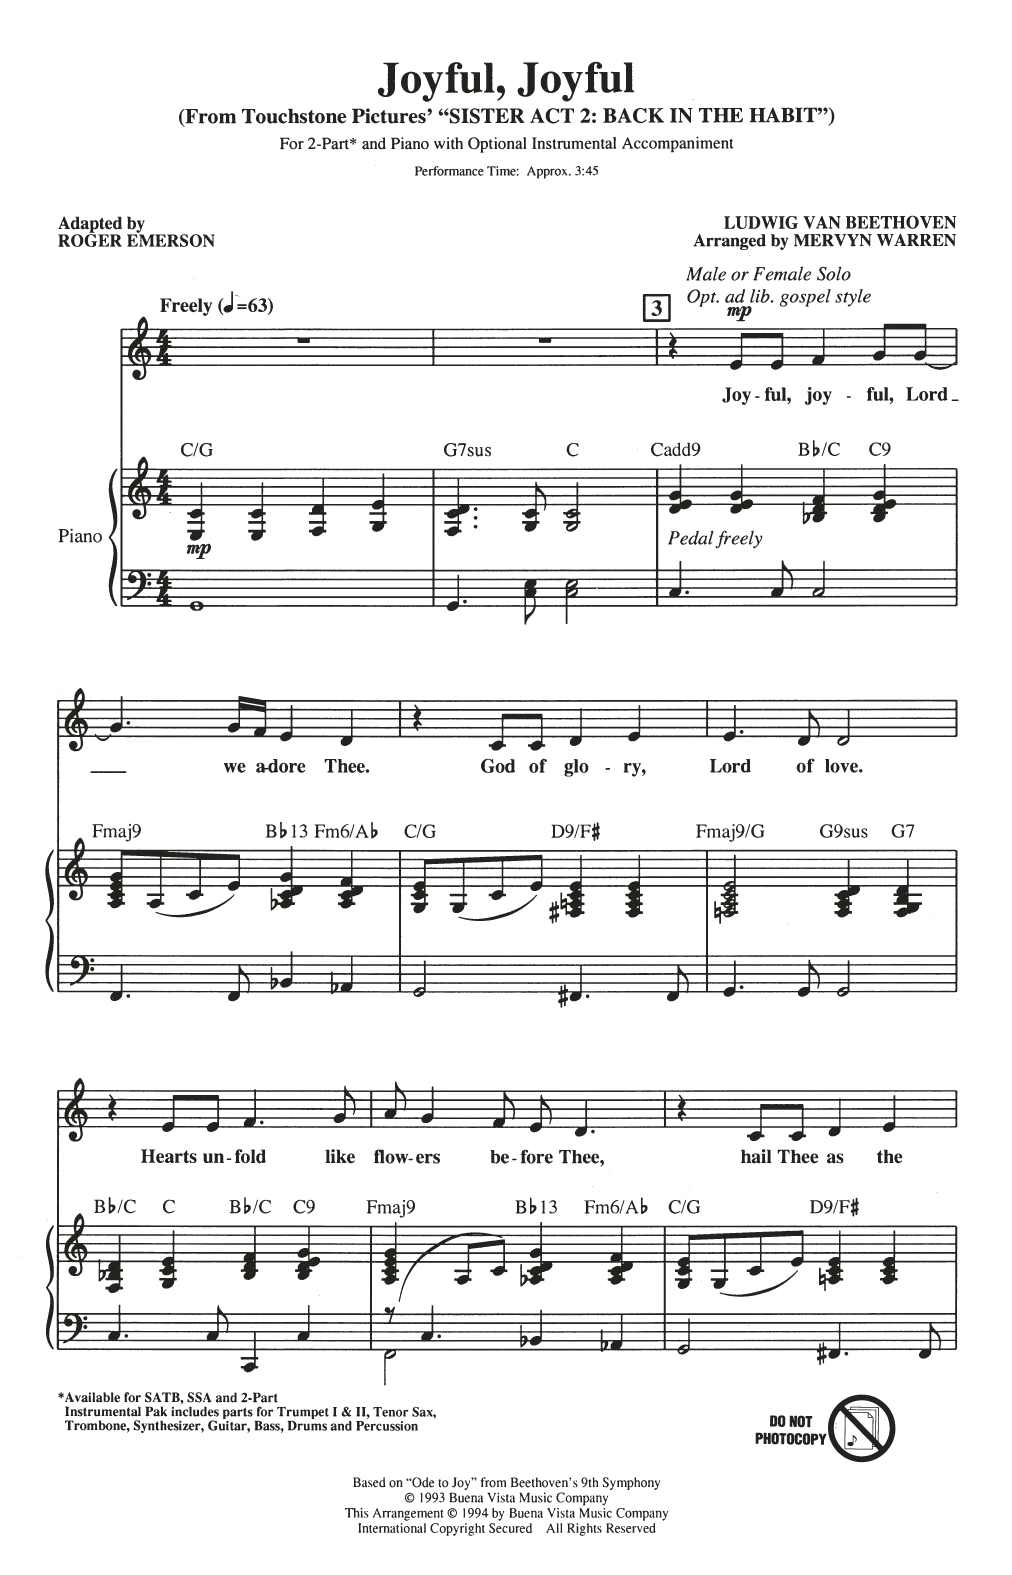 Mervyn Warren Joyful, Joyful (from Sister Act 2) (arr. Roger Emerson) Sheet Music Notes & Chords for 3-Part Mixed Choir - Download or Print PDF